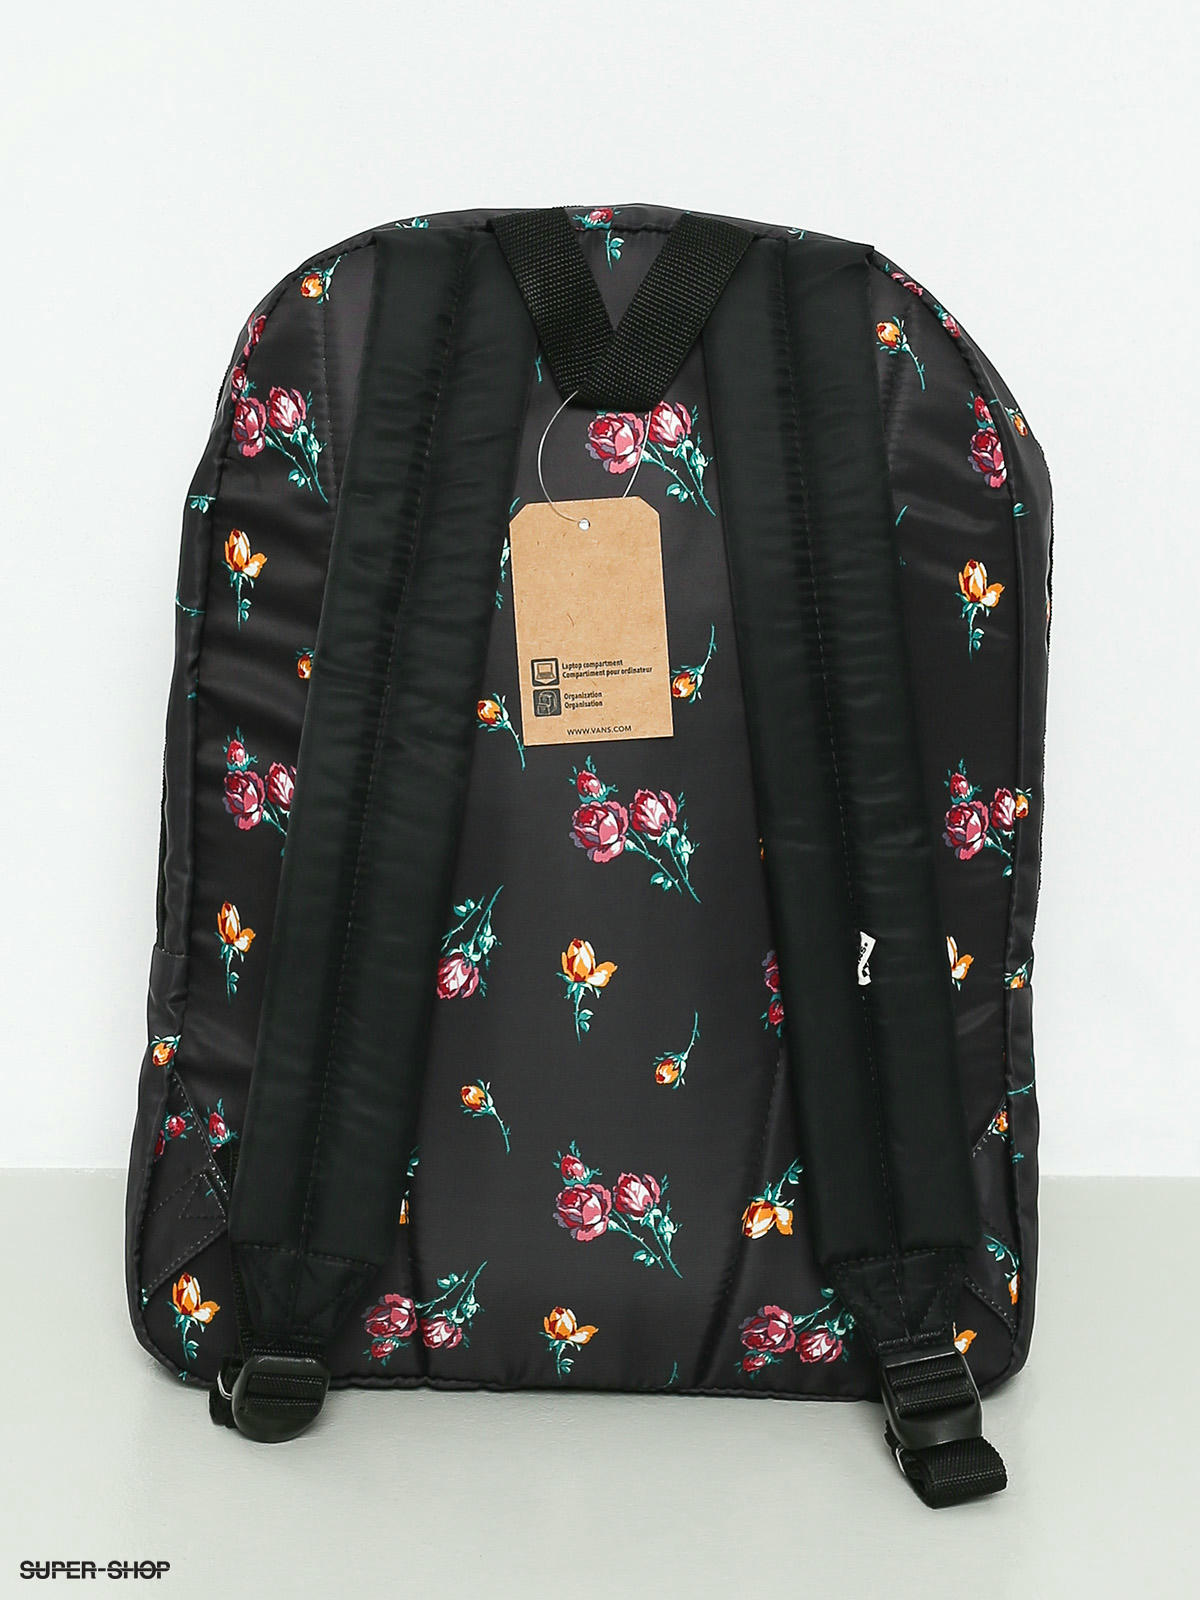 vans distinction backpack